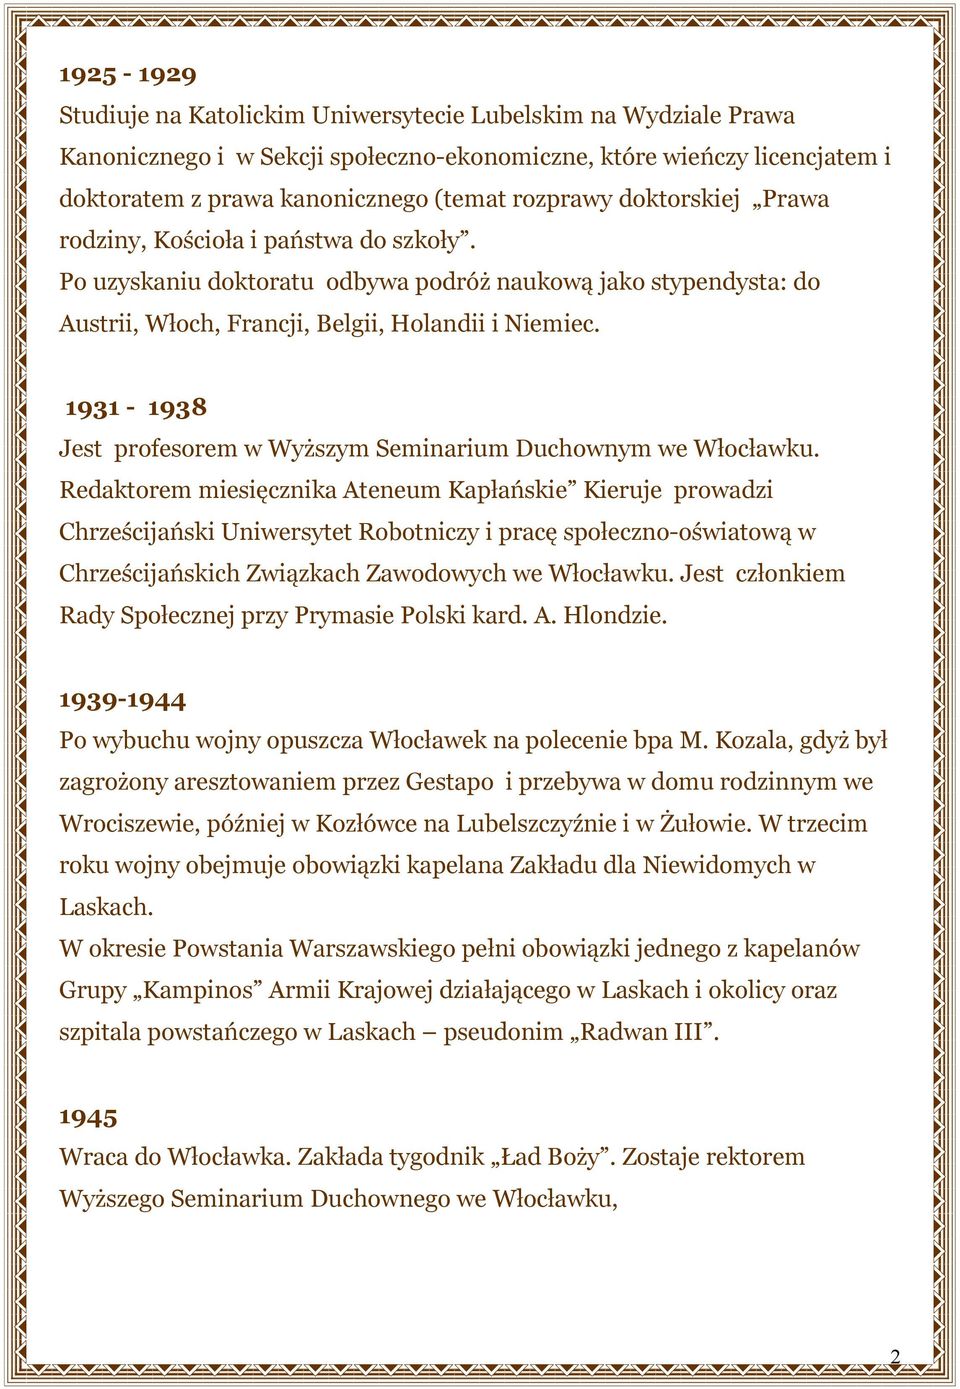 1931-1938 Jest profesorem w Wyższym Seminarium Duchownym we Włocławku.